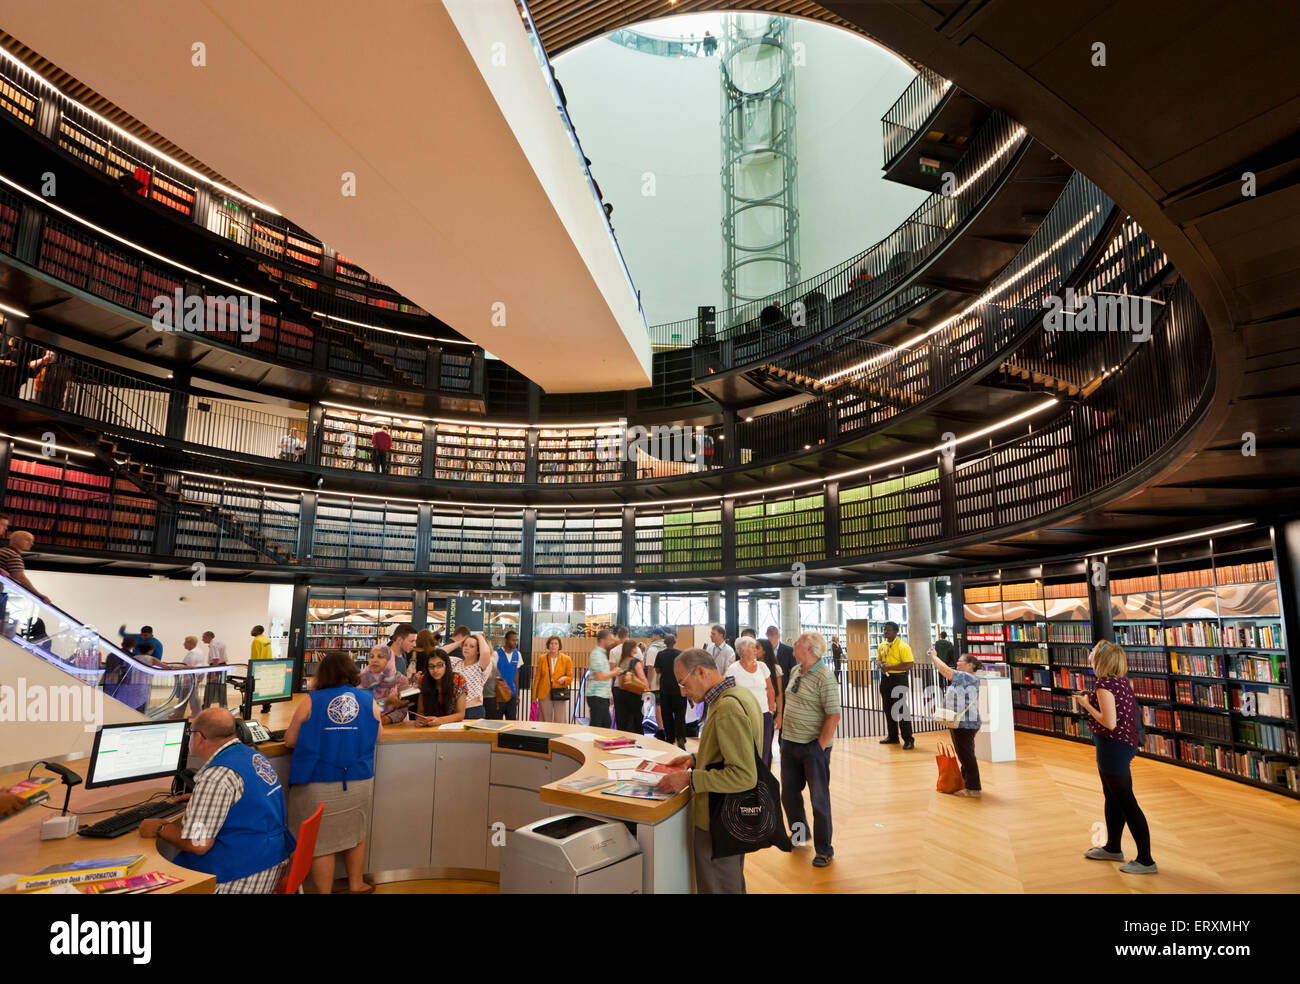 Molte persone all'interno della nuova biblioteca della biblioteca di Birmingham Birmingham West Midlands England, Regno Unito, GB, Europa UE Foto Stock